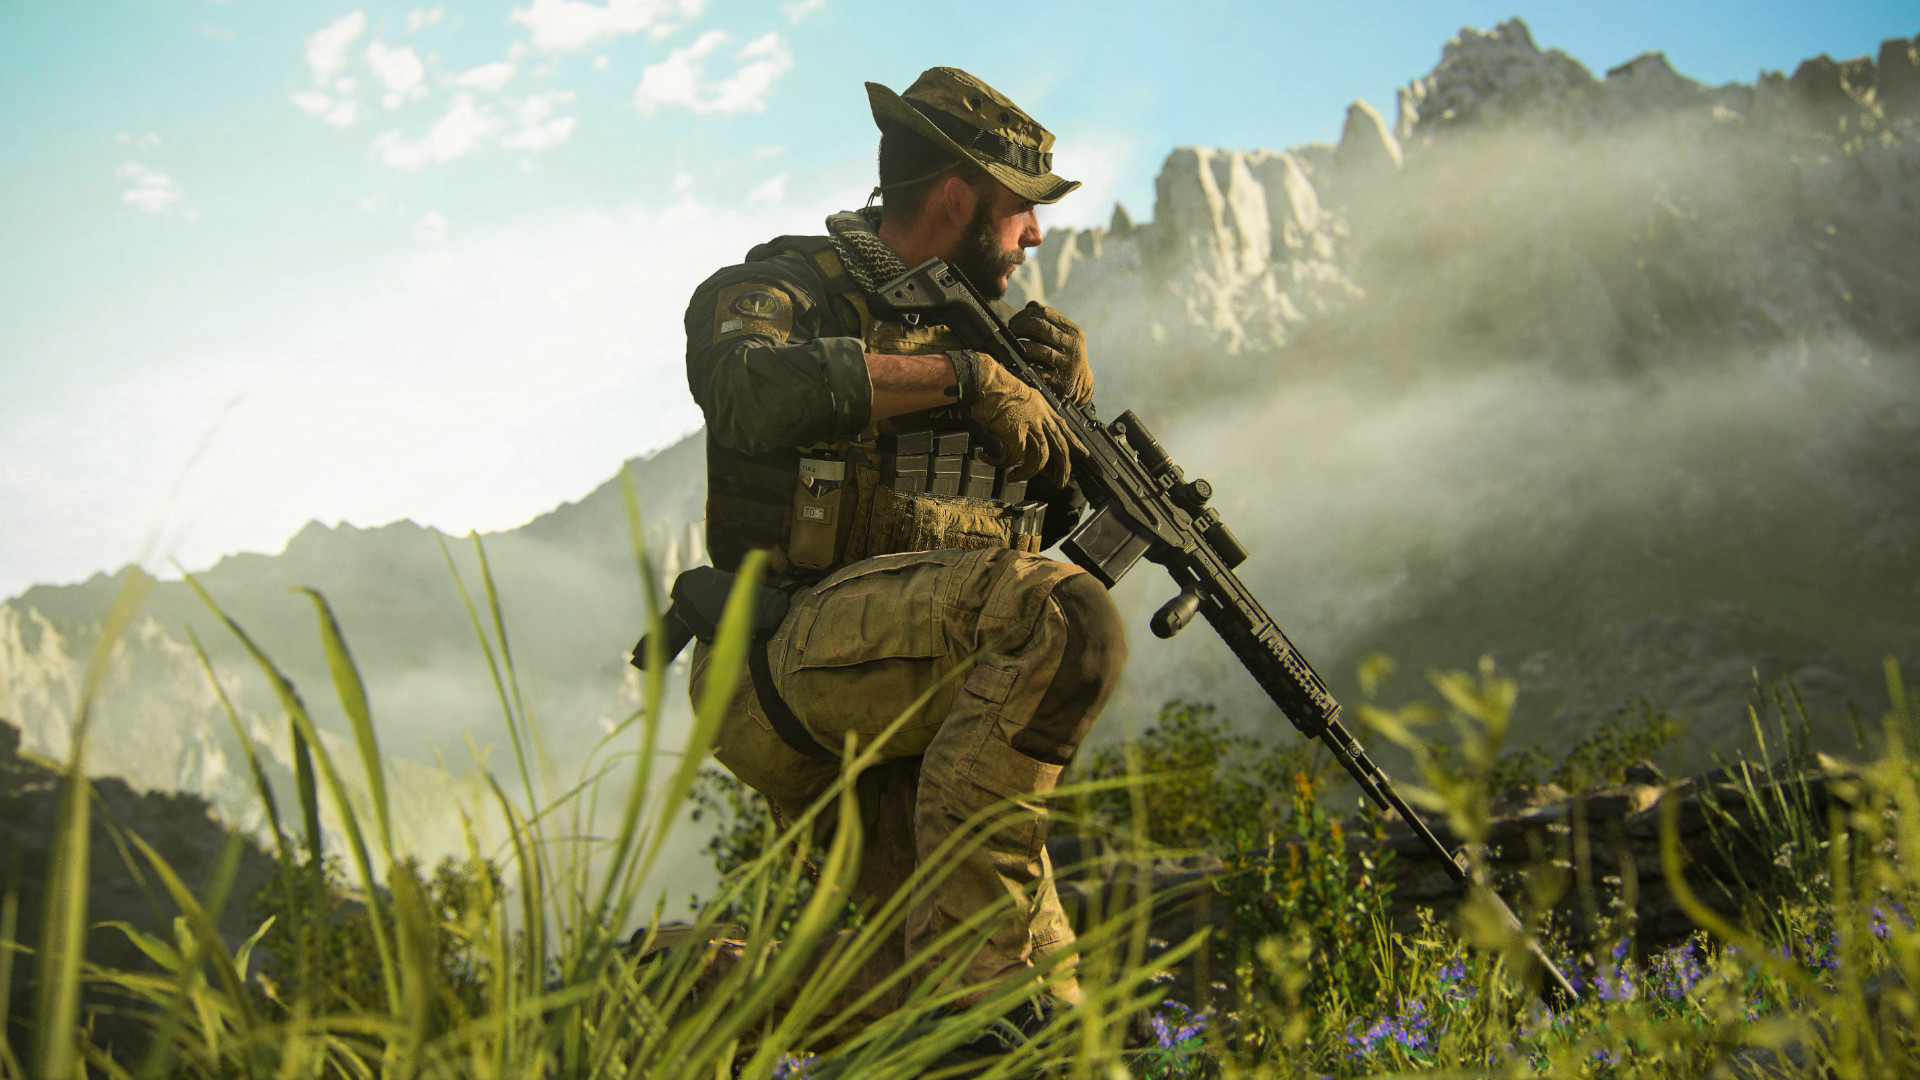 Call of Duty: Modern Warfare III: trailer do Multiplayer